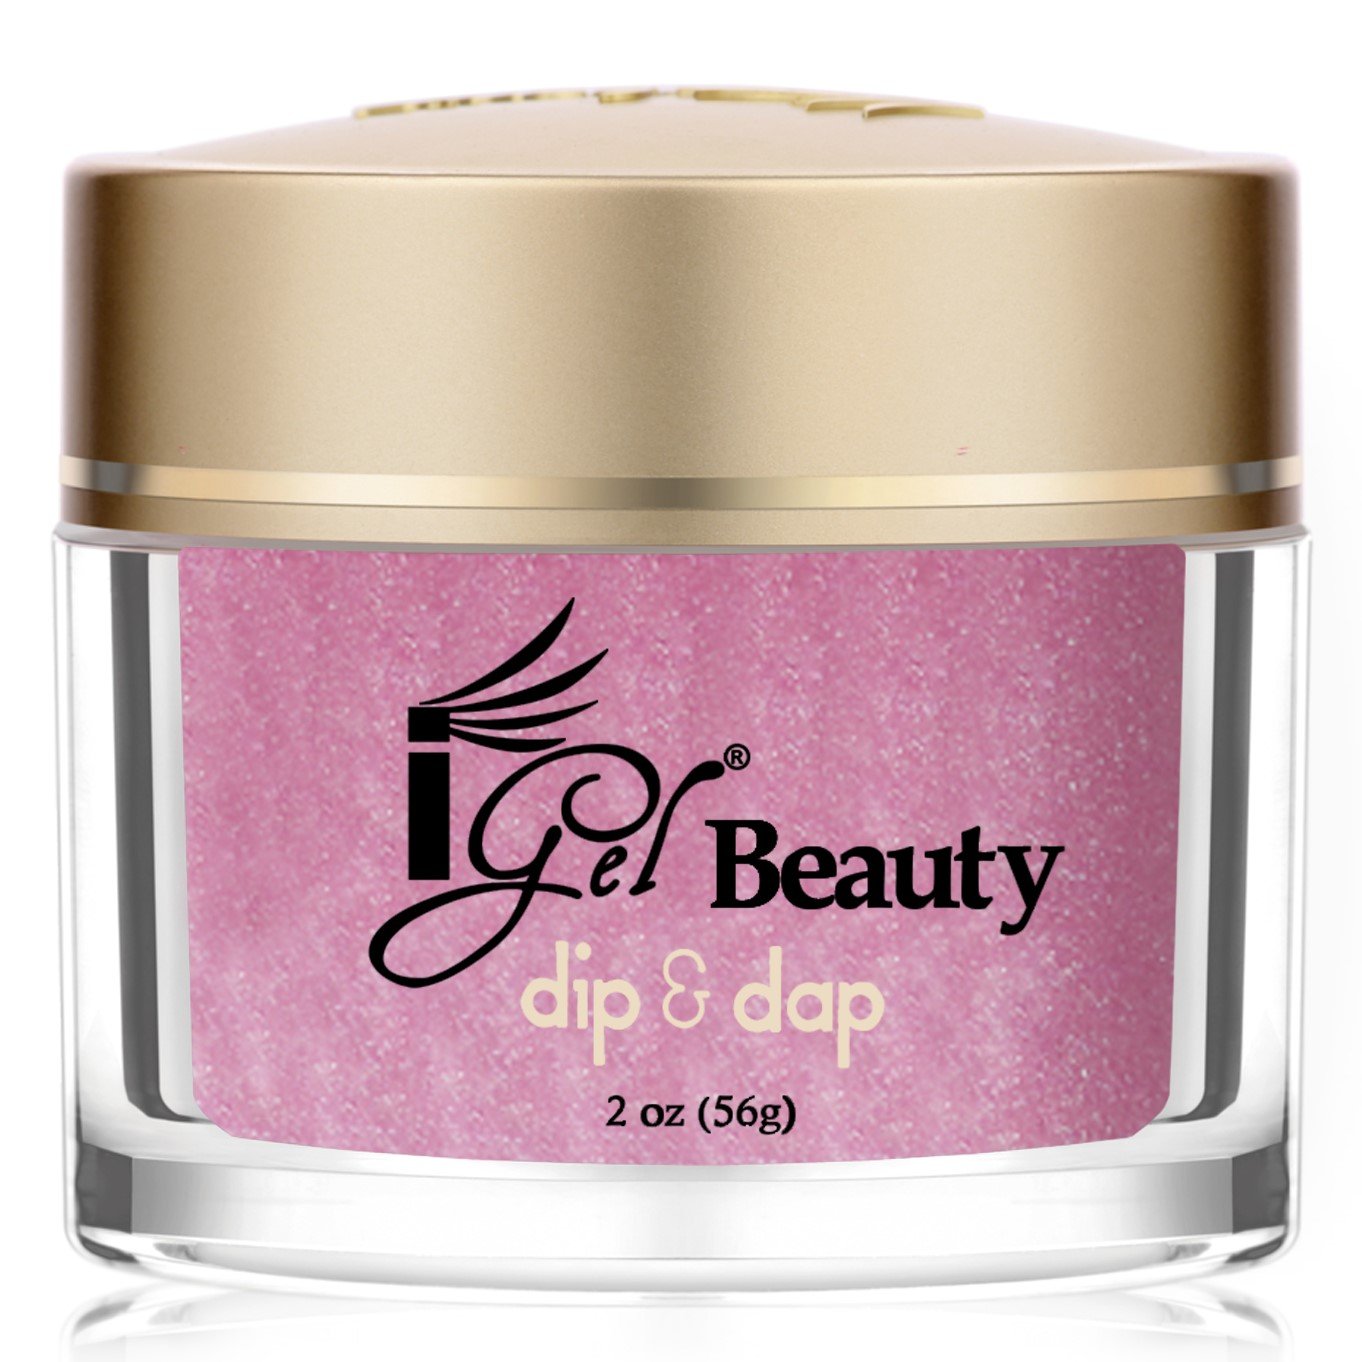 iGel Beauty - Dip & Dap Powder - DD140 Smooth Shimmer